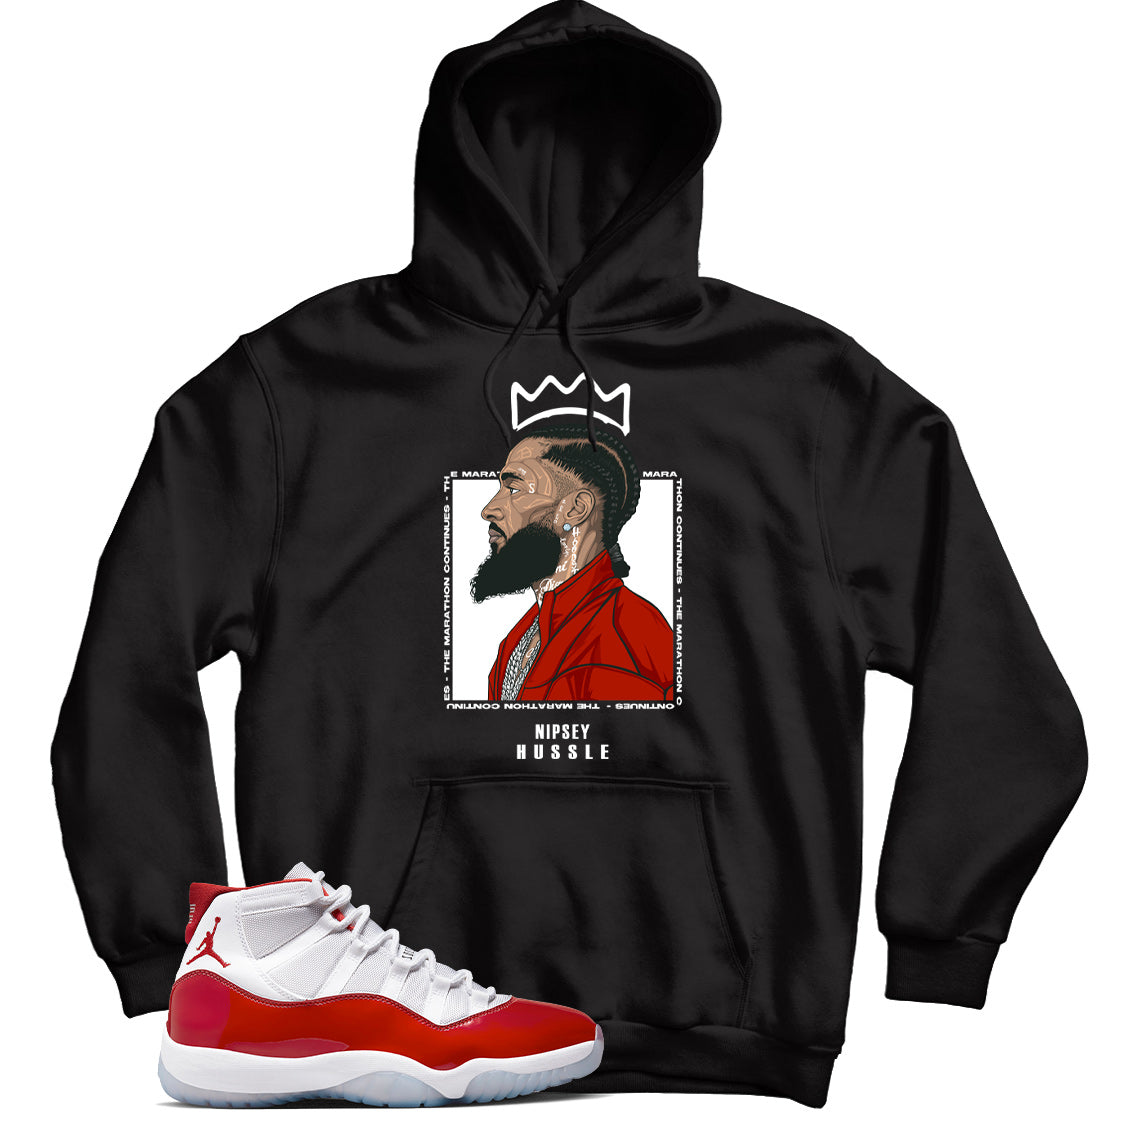 Jordan 11 Cherry hoodie